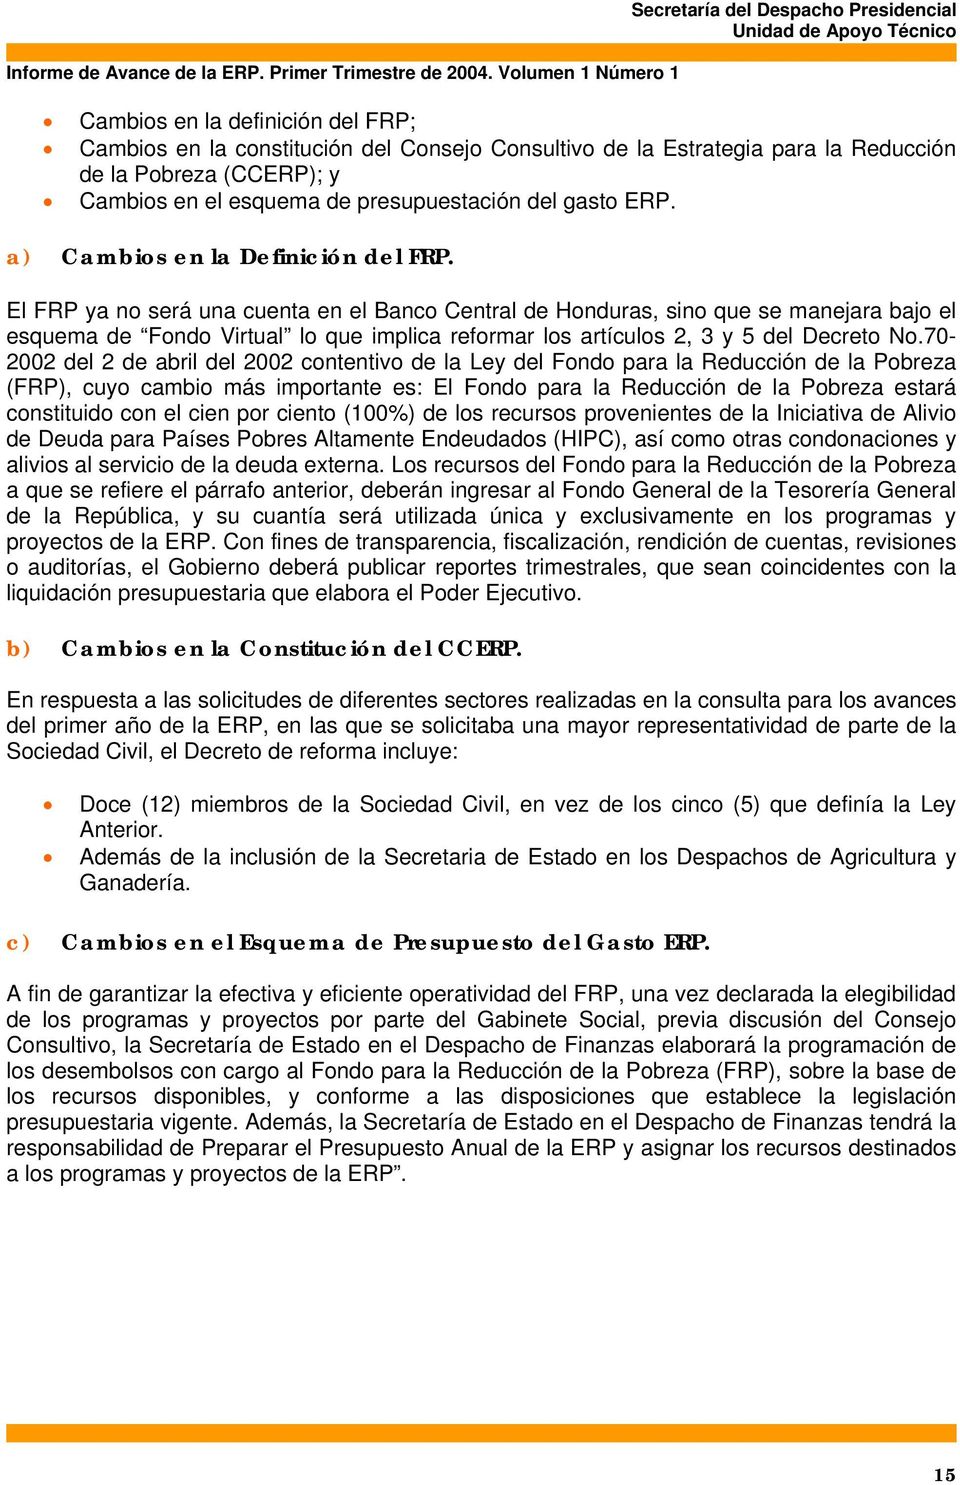 El FRP ya no será una cuenta en el Banco Central de Honduras, sino que se manejara bajo el esquema de Fondo Virtual lo que implica reformar los artículos 2, 3 y 5 del Decreto No.